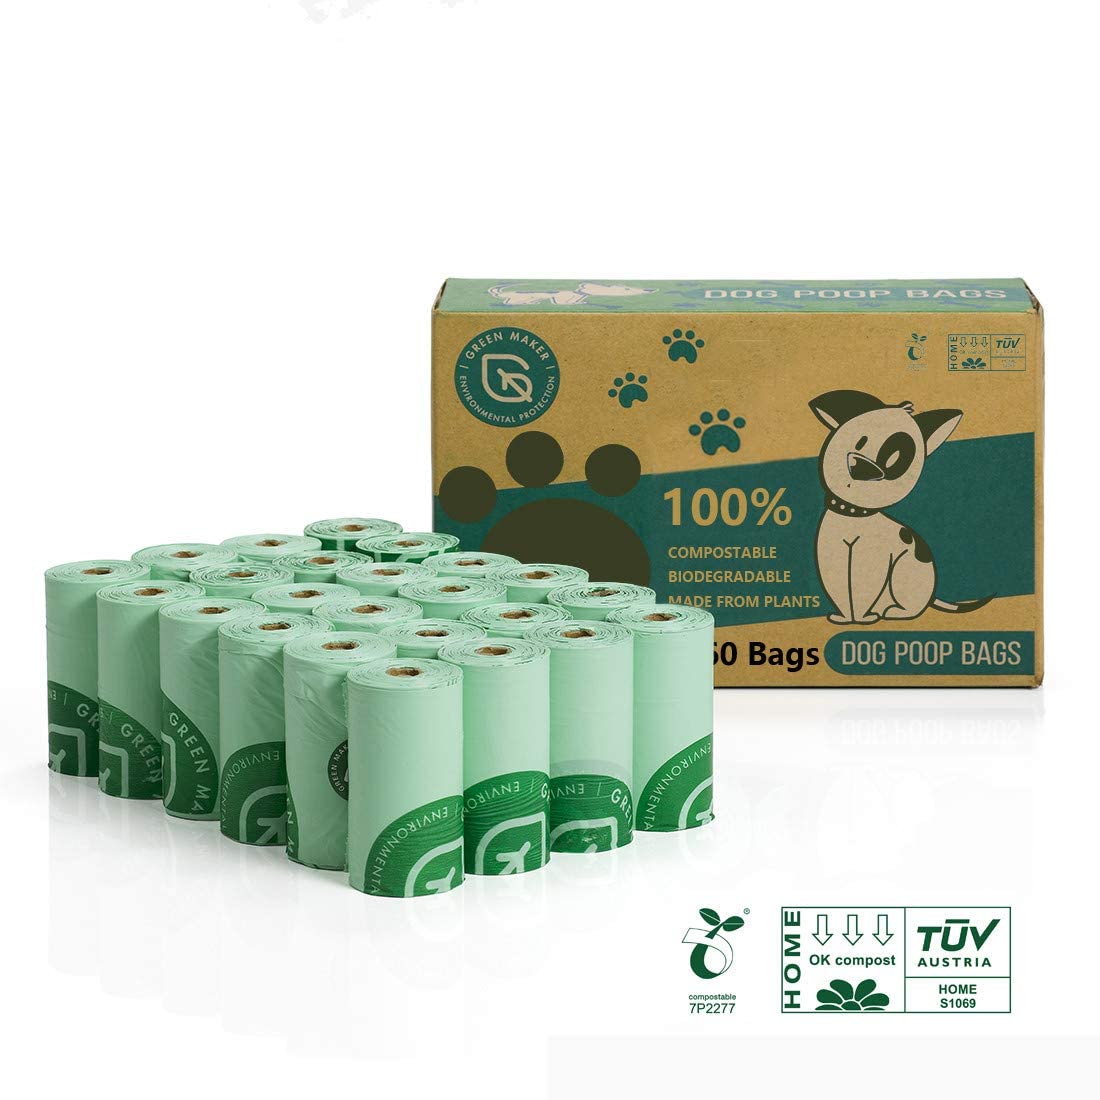  Green Maker 100% Biodegradables Caca Perro 360 Bolsas Excrementos Perros 30% más Grueso Que Otros Hechos de Almidón de Maíz con Certificación Europea EN13432 y Home Compost (Verde) 